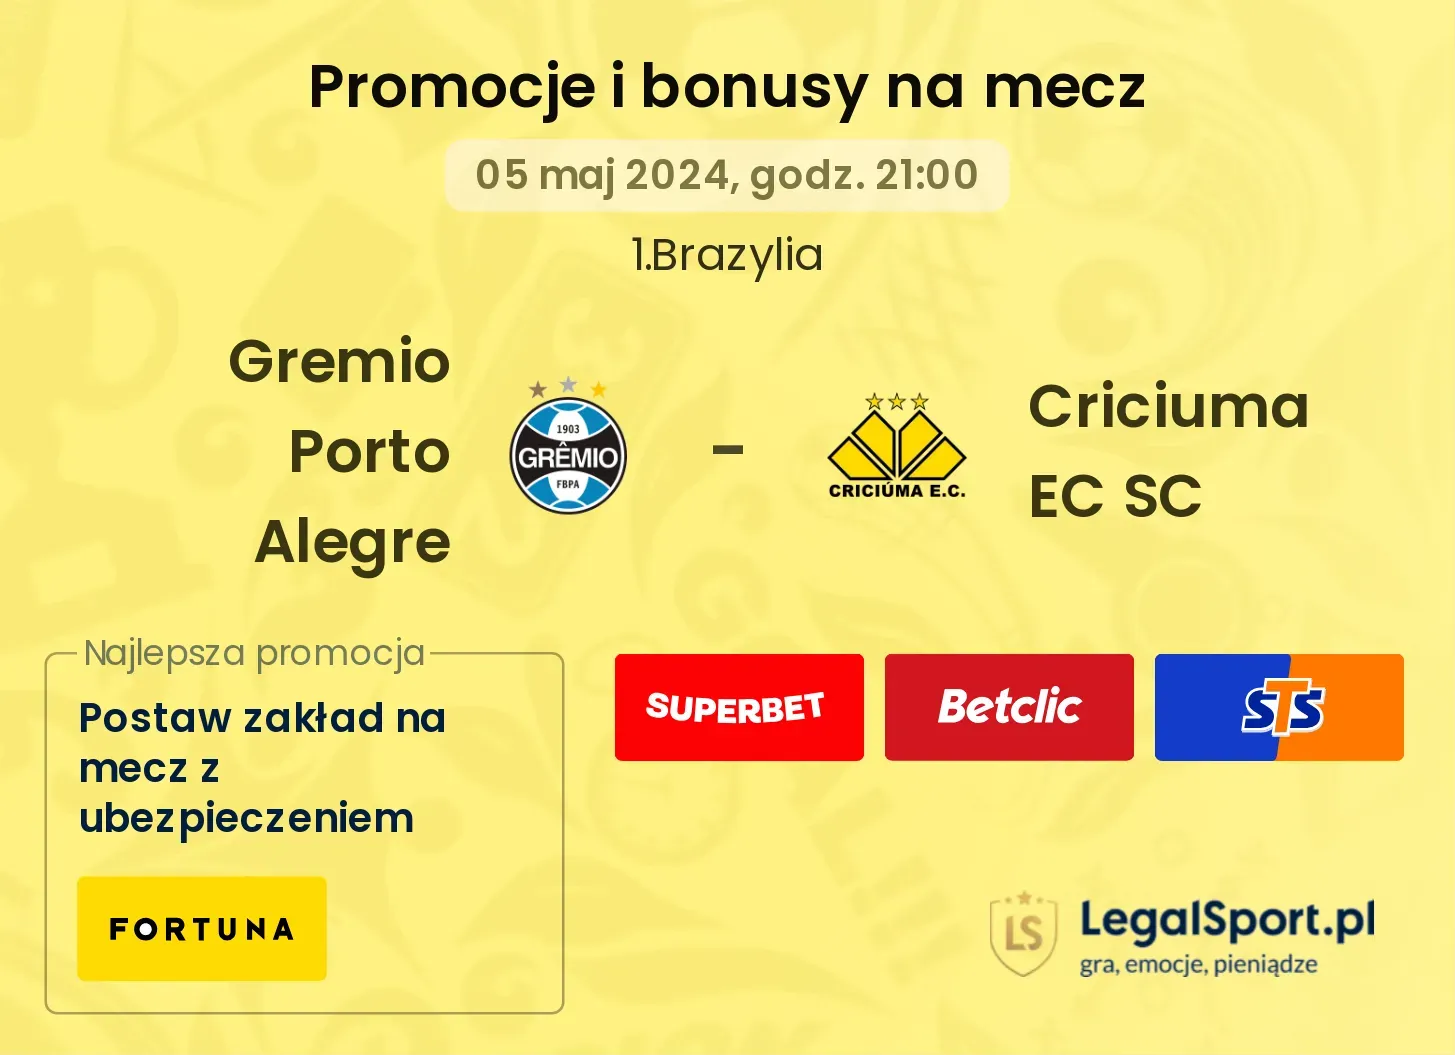 Gremio Porto Alegre - Criciuma EC SC promocje bonusy na mecz